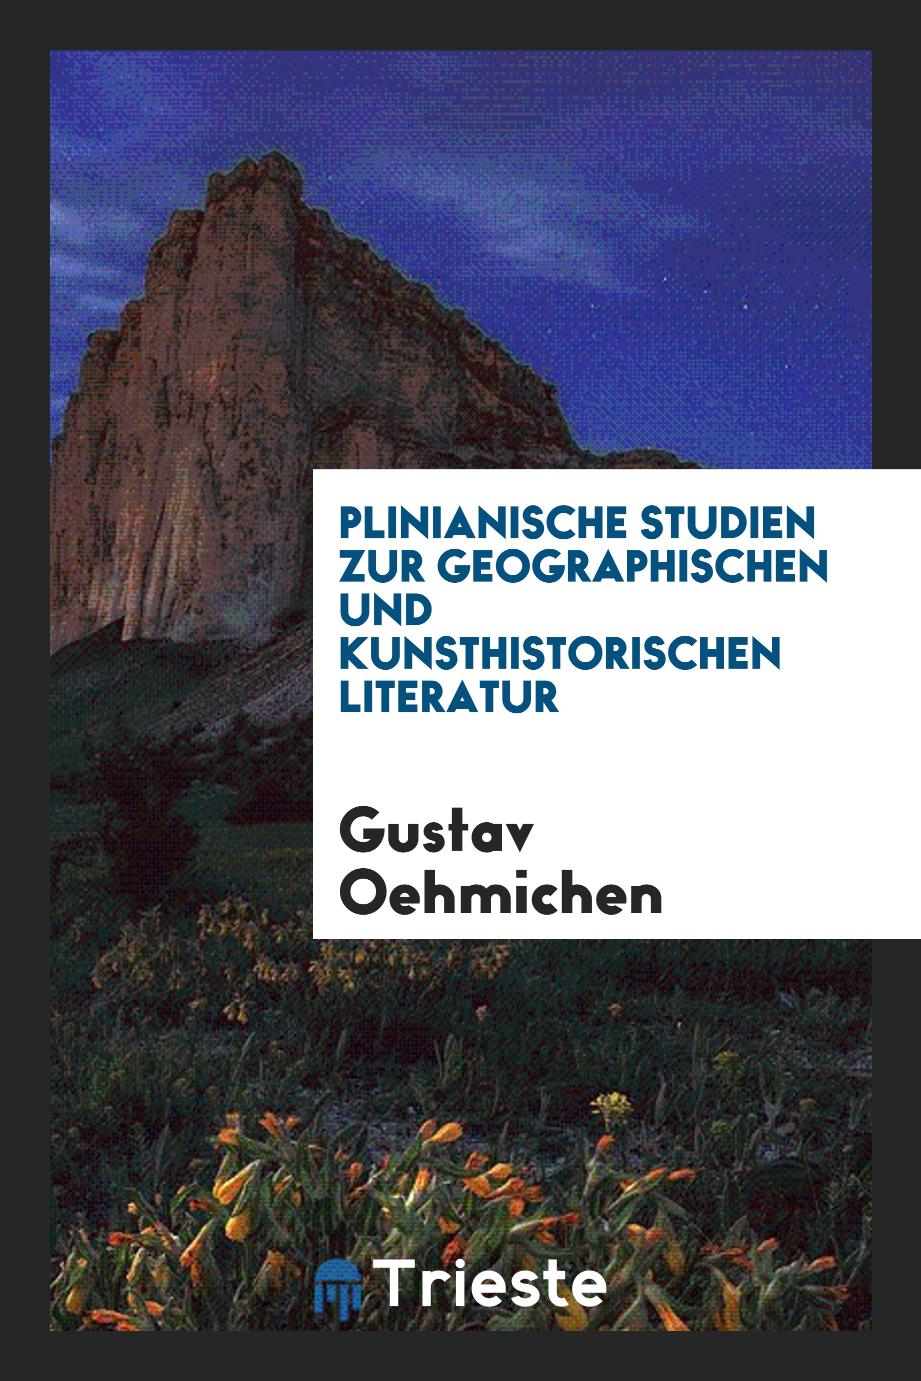 Plinianische Studien zur geographischen und kunsthistorischen Literatur